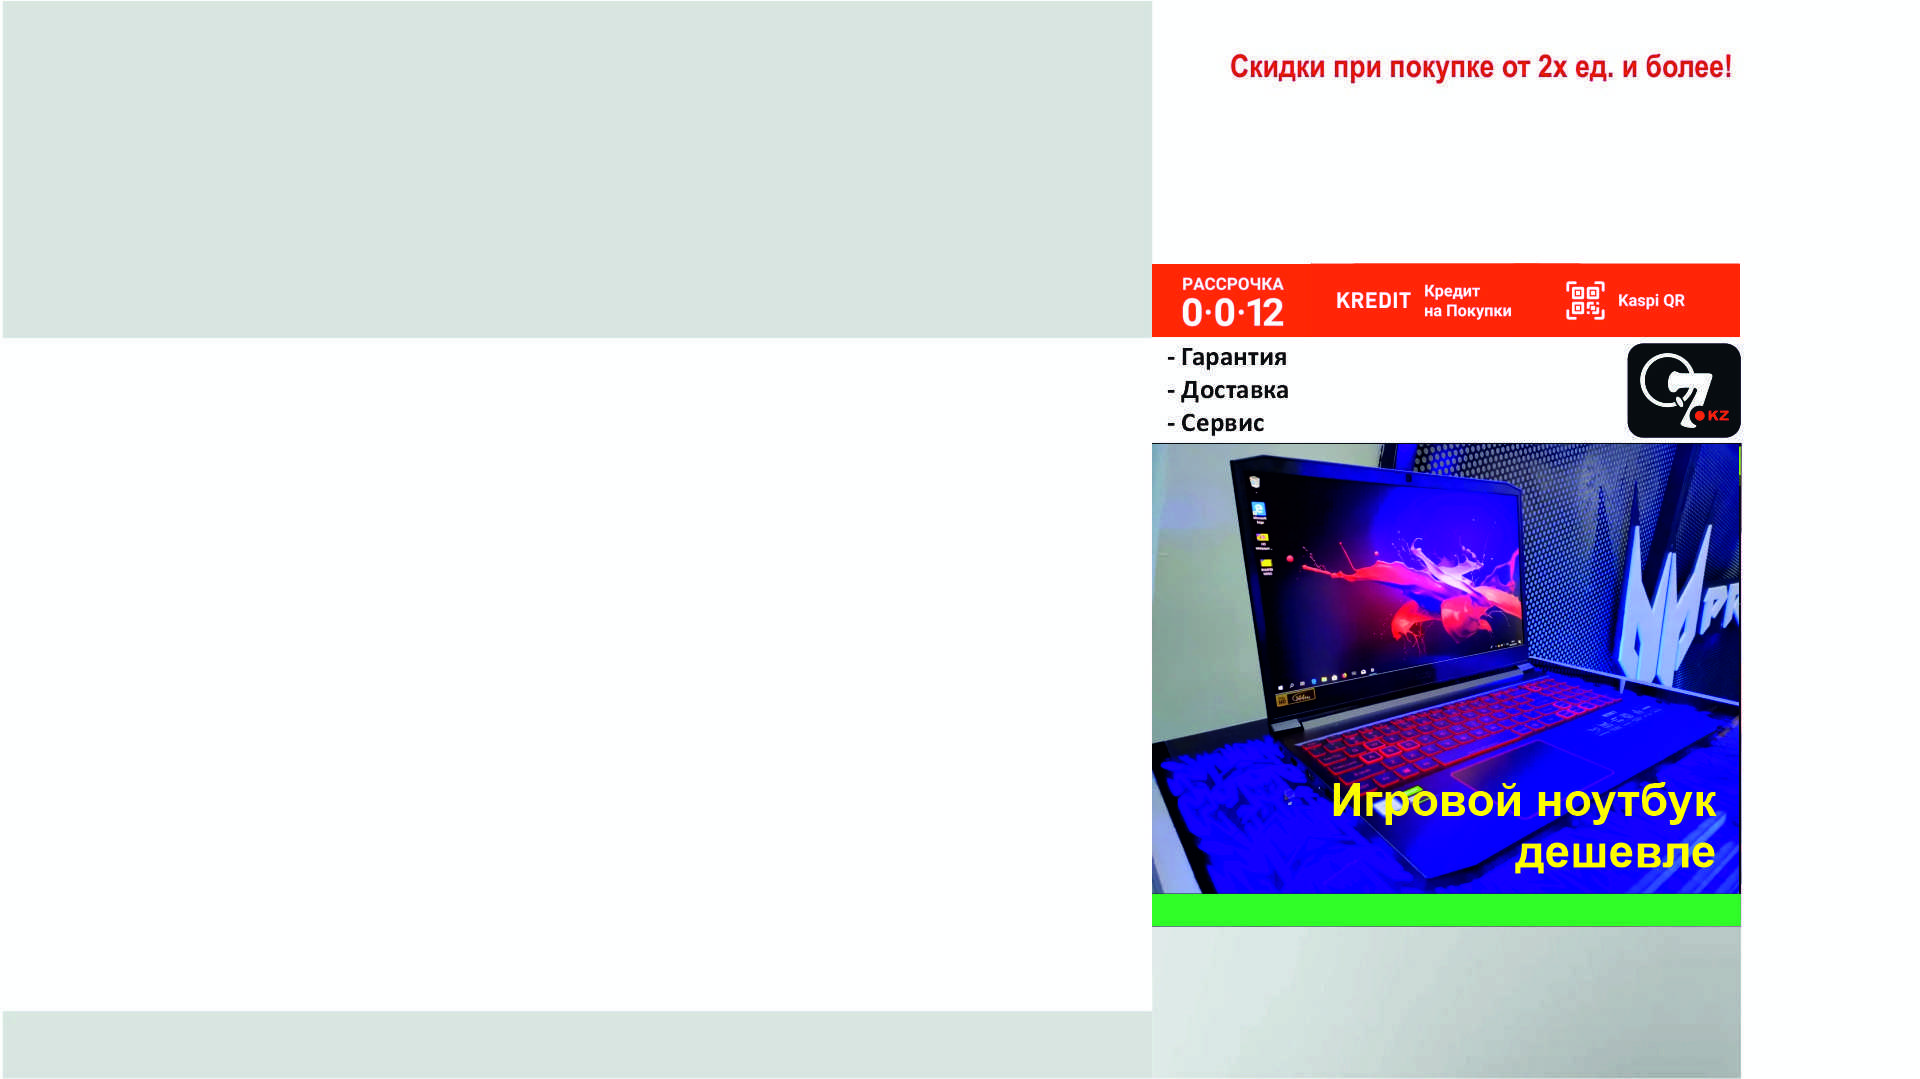 Игровой компьютер - Компьютер в Алматы, купить системный блок ПК 